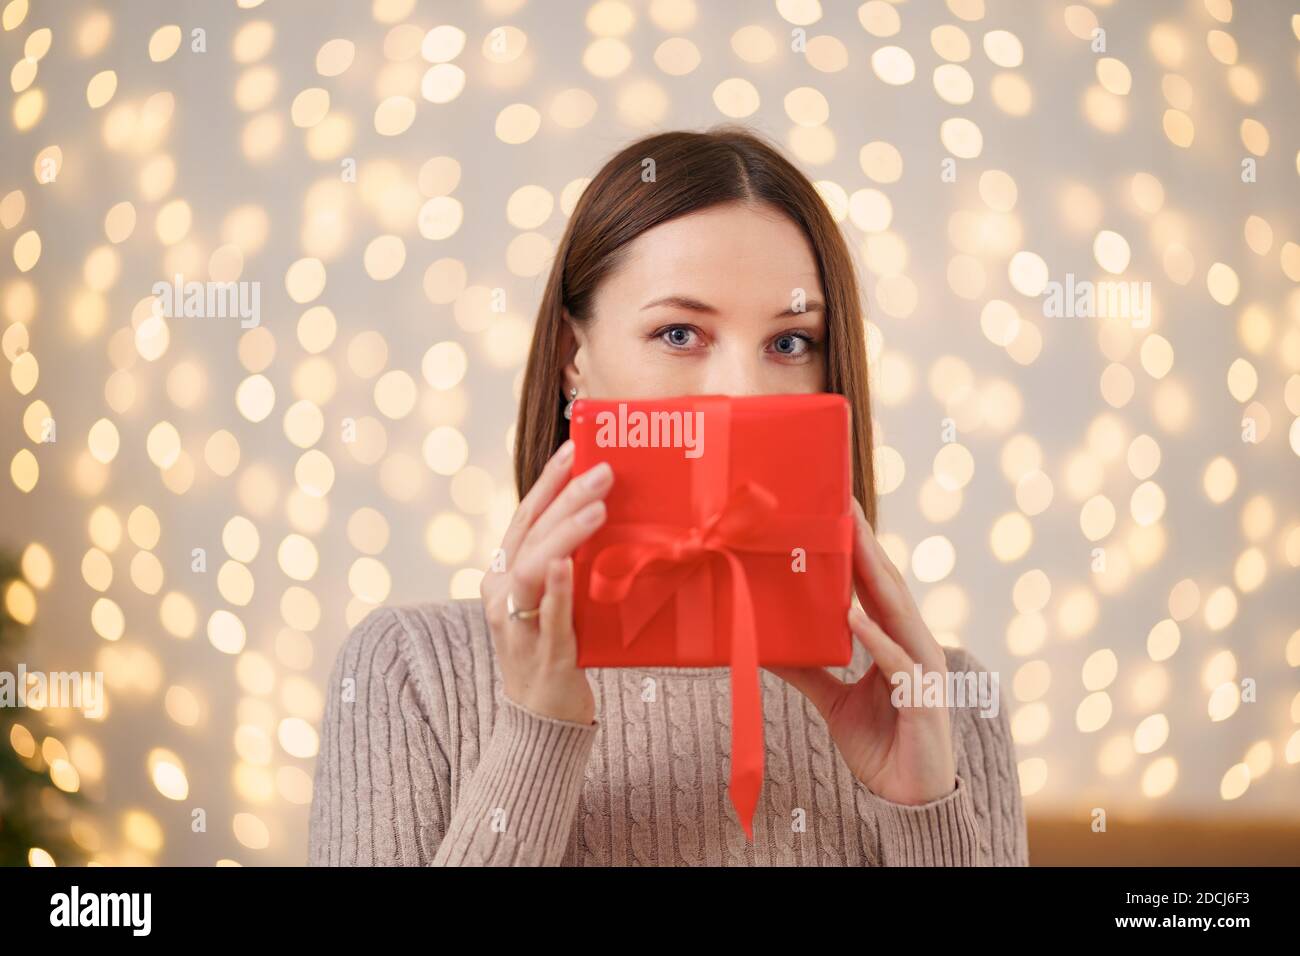 Portrait de la jeune femme heureuse lèvres rouges se cachant derrière la boîte cadeau emballée. Gros plan la femme satisfaite a reçu la boîte actuelle. Rétro-éclairage de Noël festif Banque D'Images